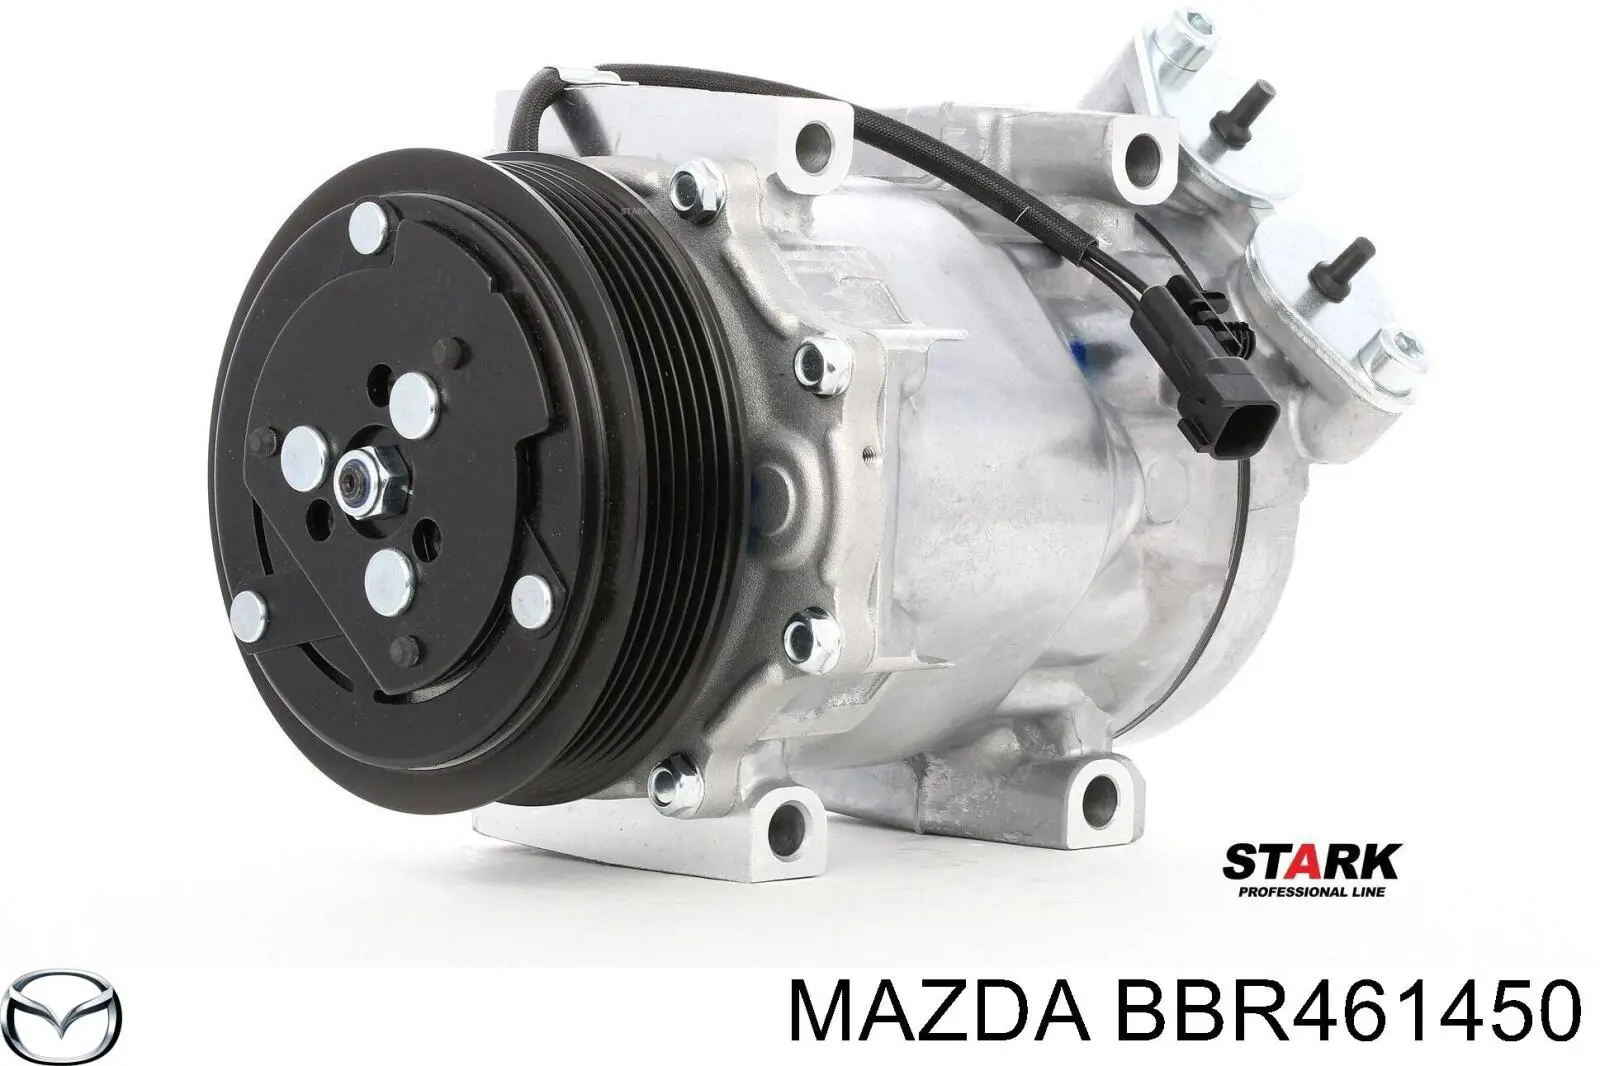 BBR461450 Mazda compressor de aparelho de ar condicionado